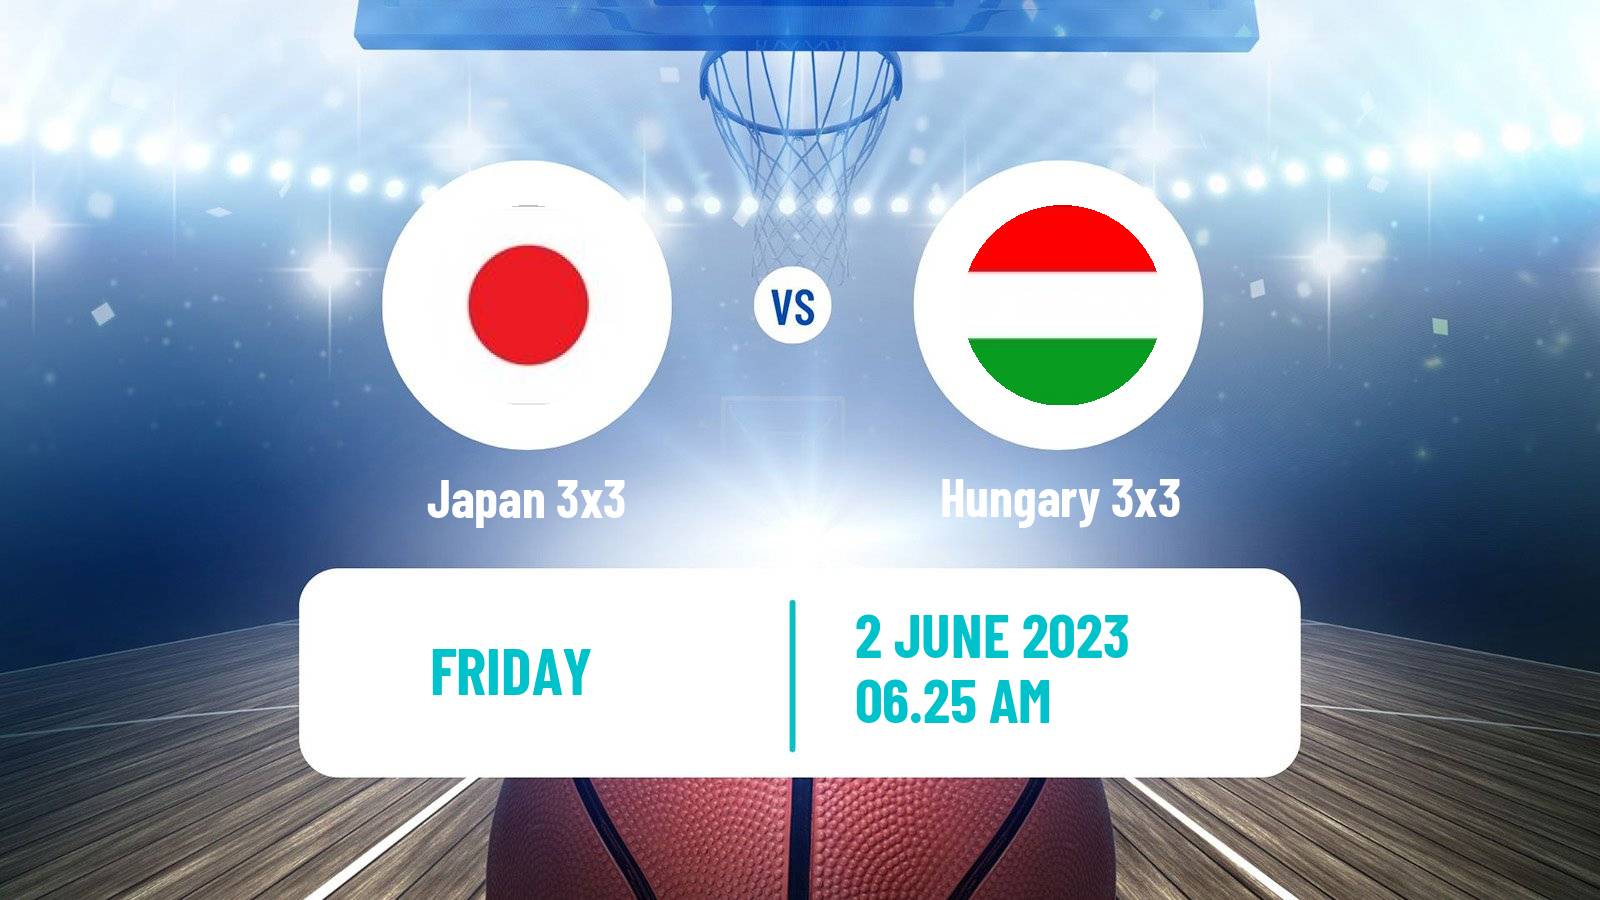 Basketball World Cup Basketball 3x3 Japan 3x3 - Hungary 3x3